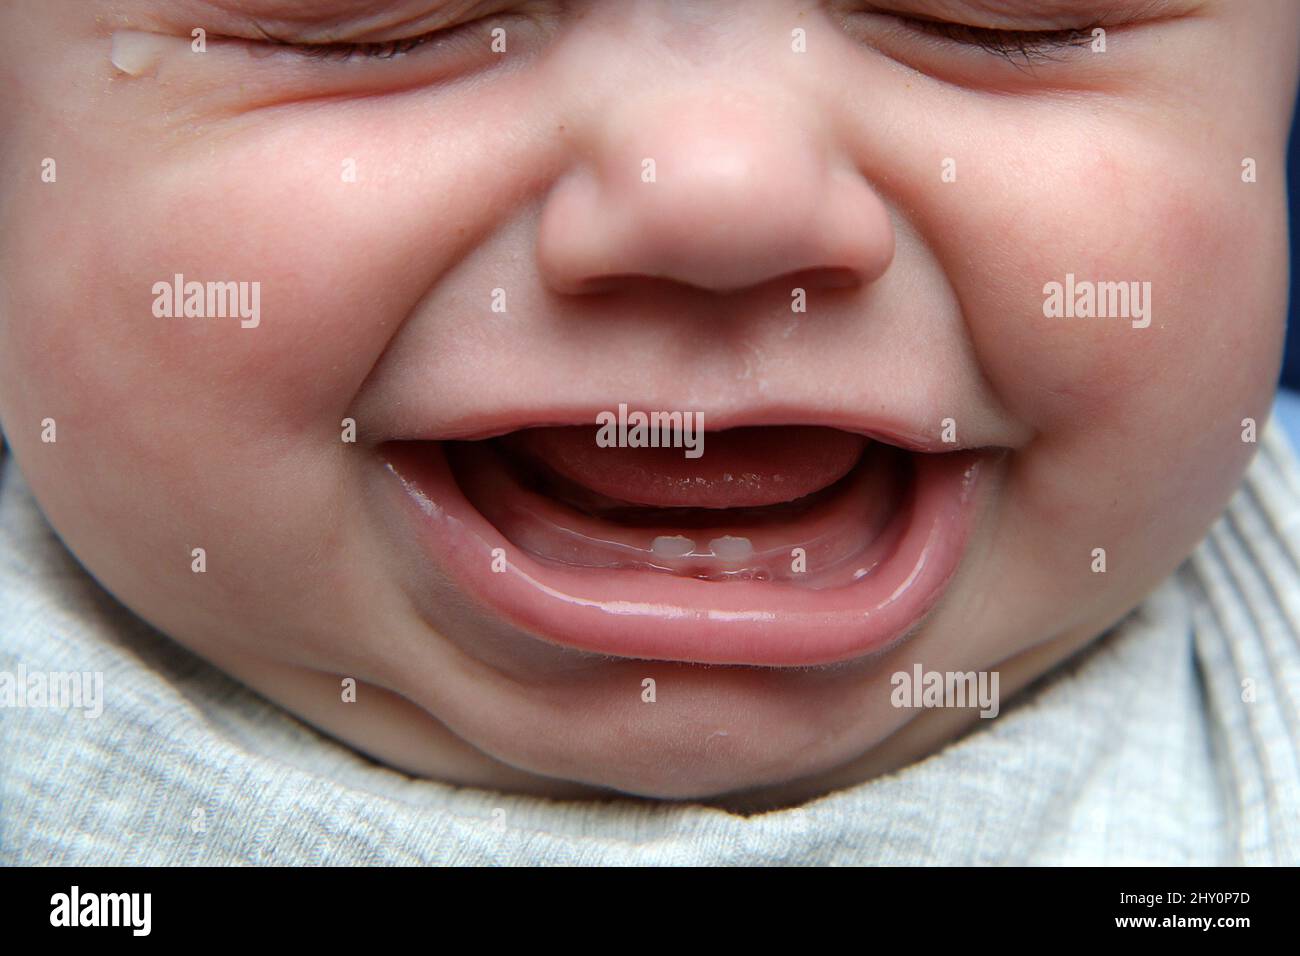 Le détail de la bouche d'un bébé avec quelques premières dents. Il pleure, car la gencive et les dents sont douloureuses. Banque D'Images